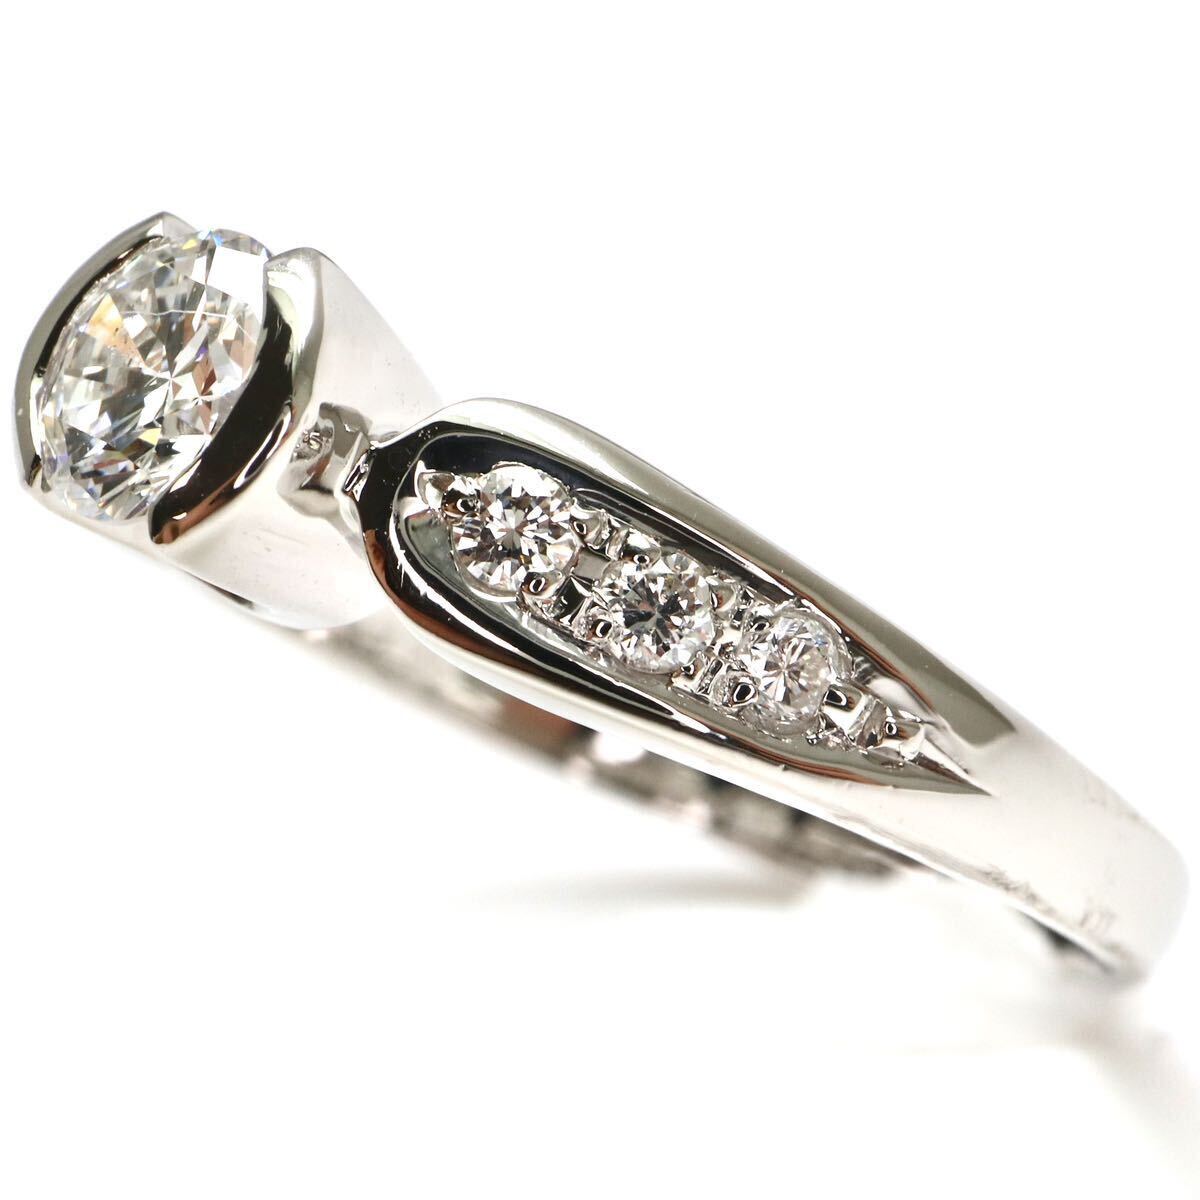 JEWELRY MAKI(ジュエリーマキ)◆Pt850 天然ダイヤモンドリング◆A 約3.6g 16号 0.38ct 0.12ct diamond ring指輪 jewelry ジュエリーEC3/ED4の画像4